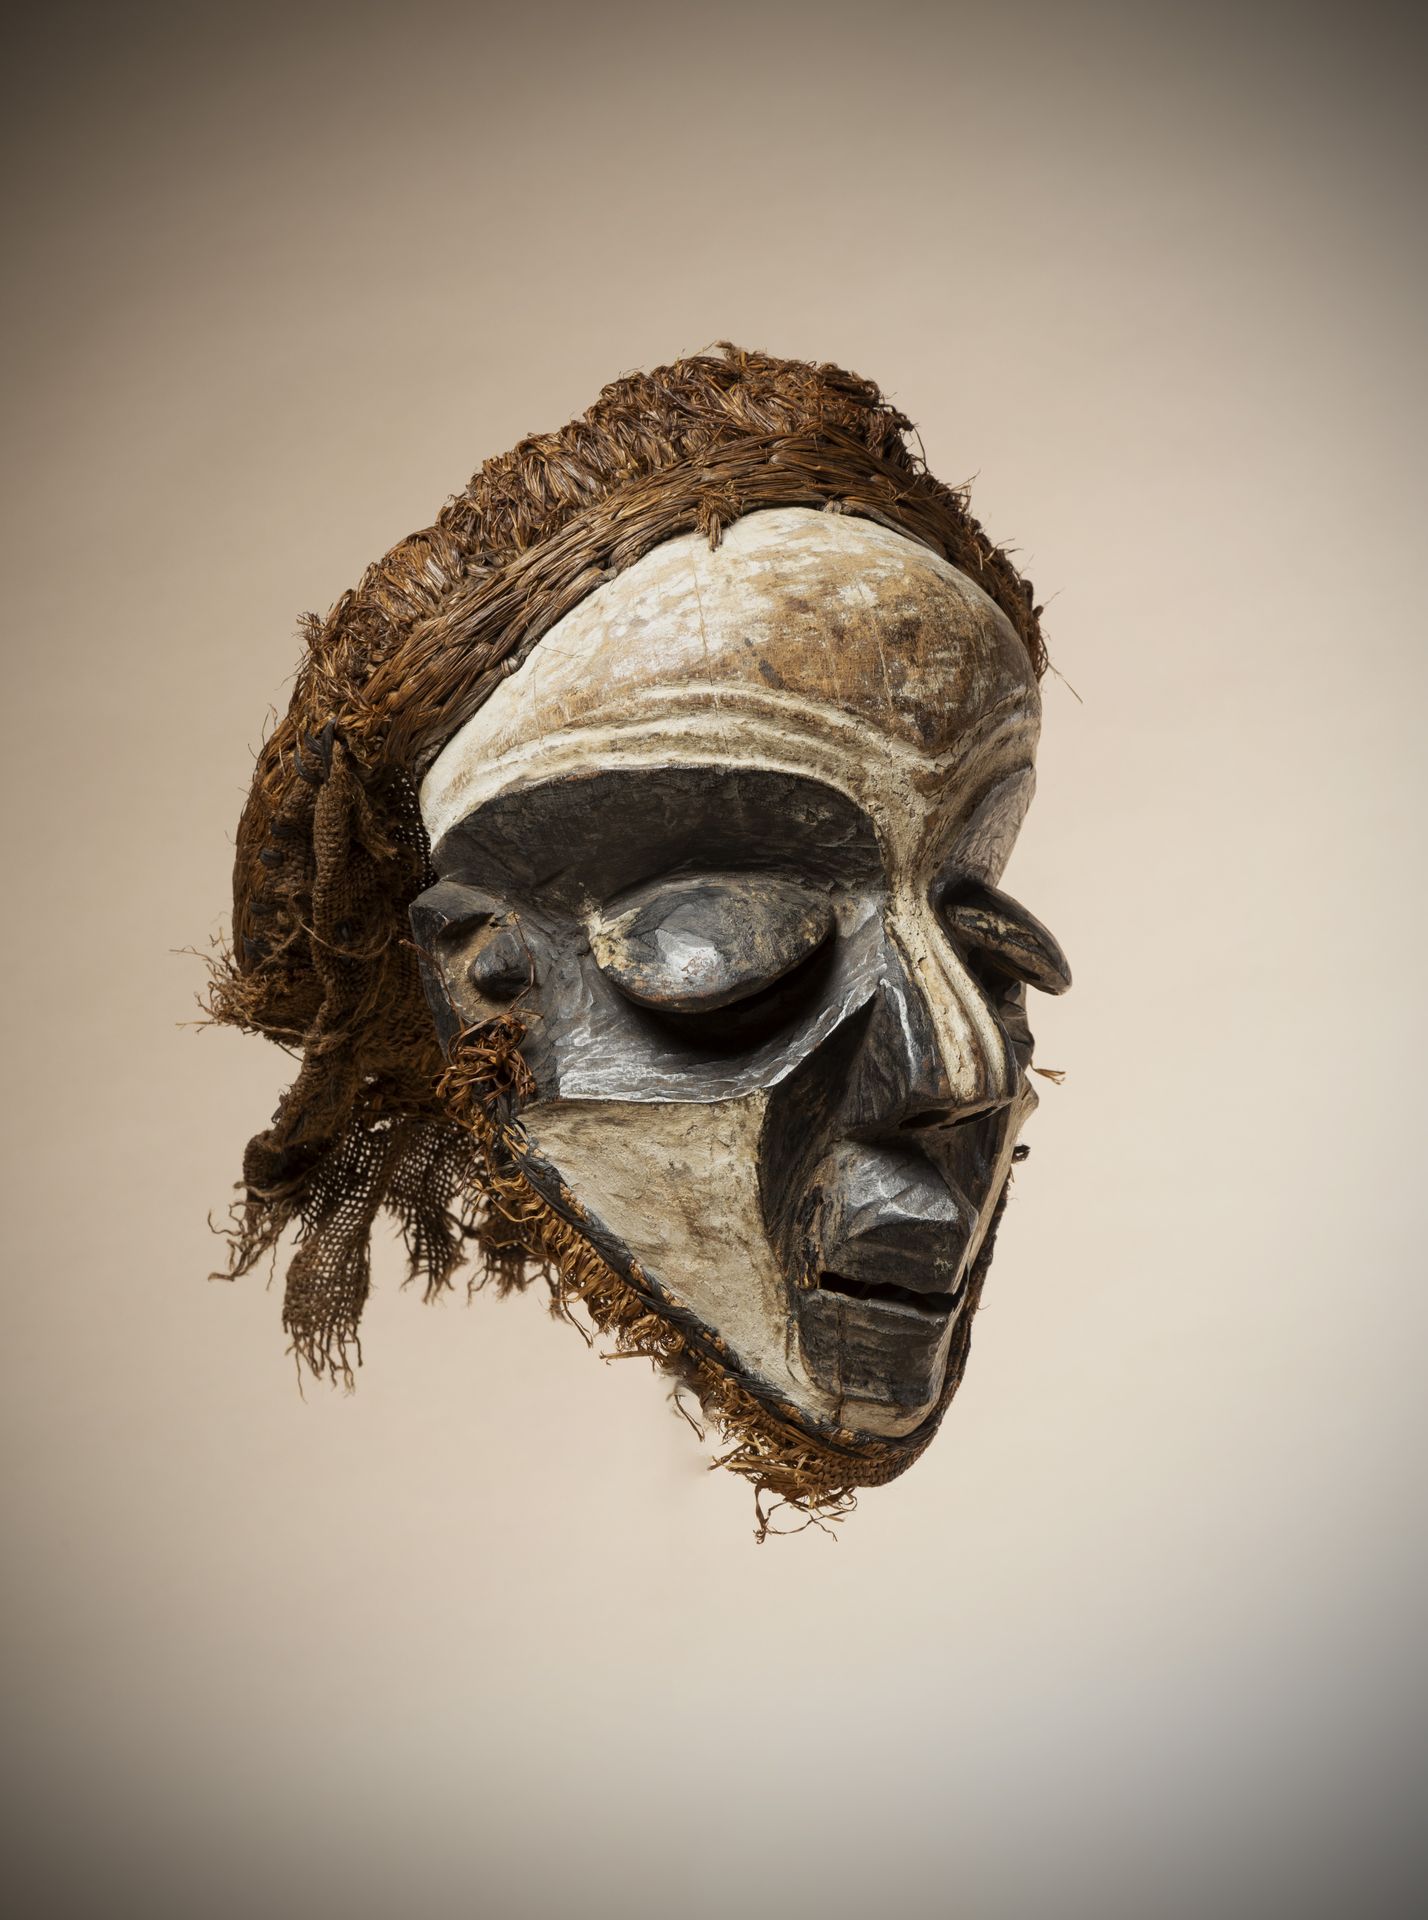 Null PENDE (Kongo DRK)

Maske mit nervösen Gesichtszügen, die durch die schwarz-&hellip;